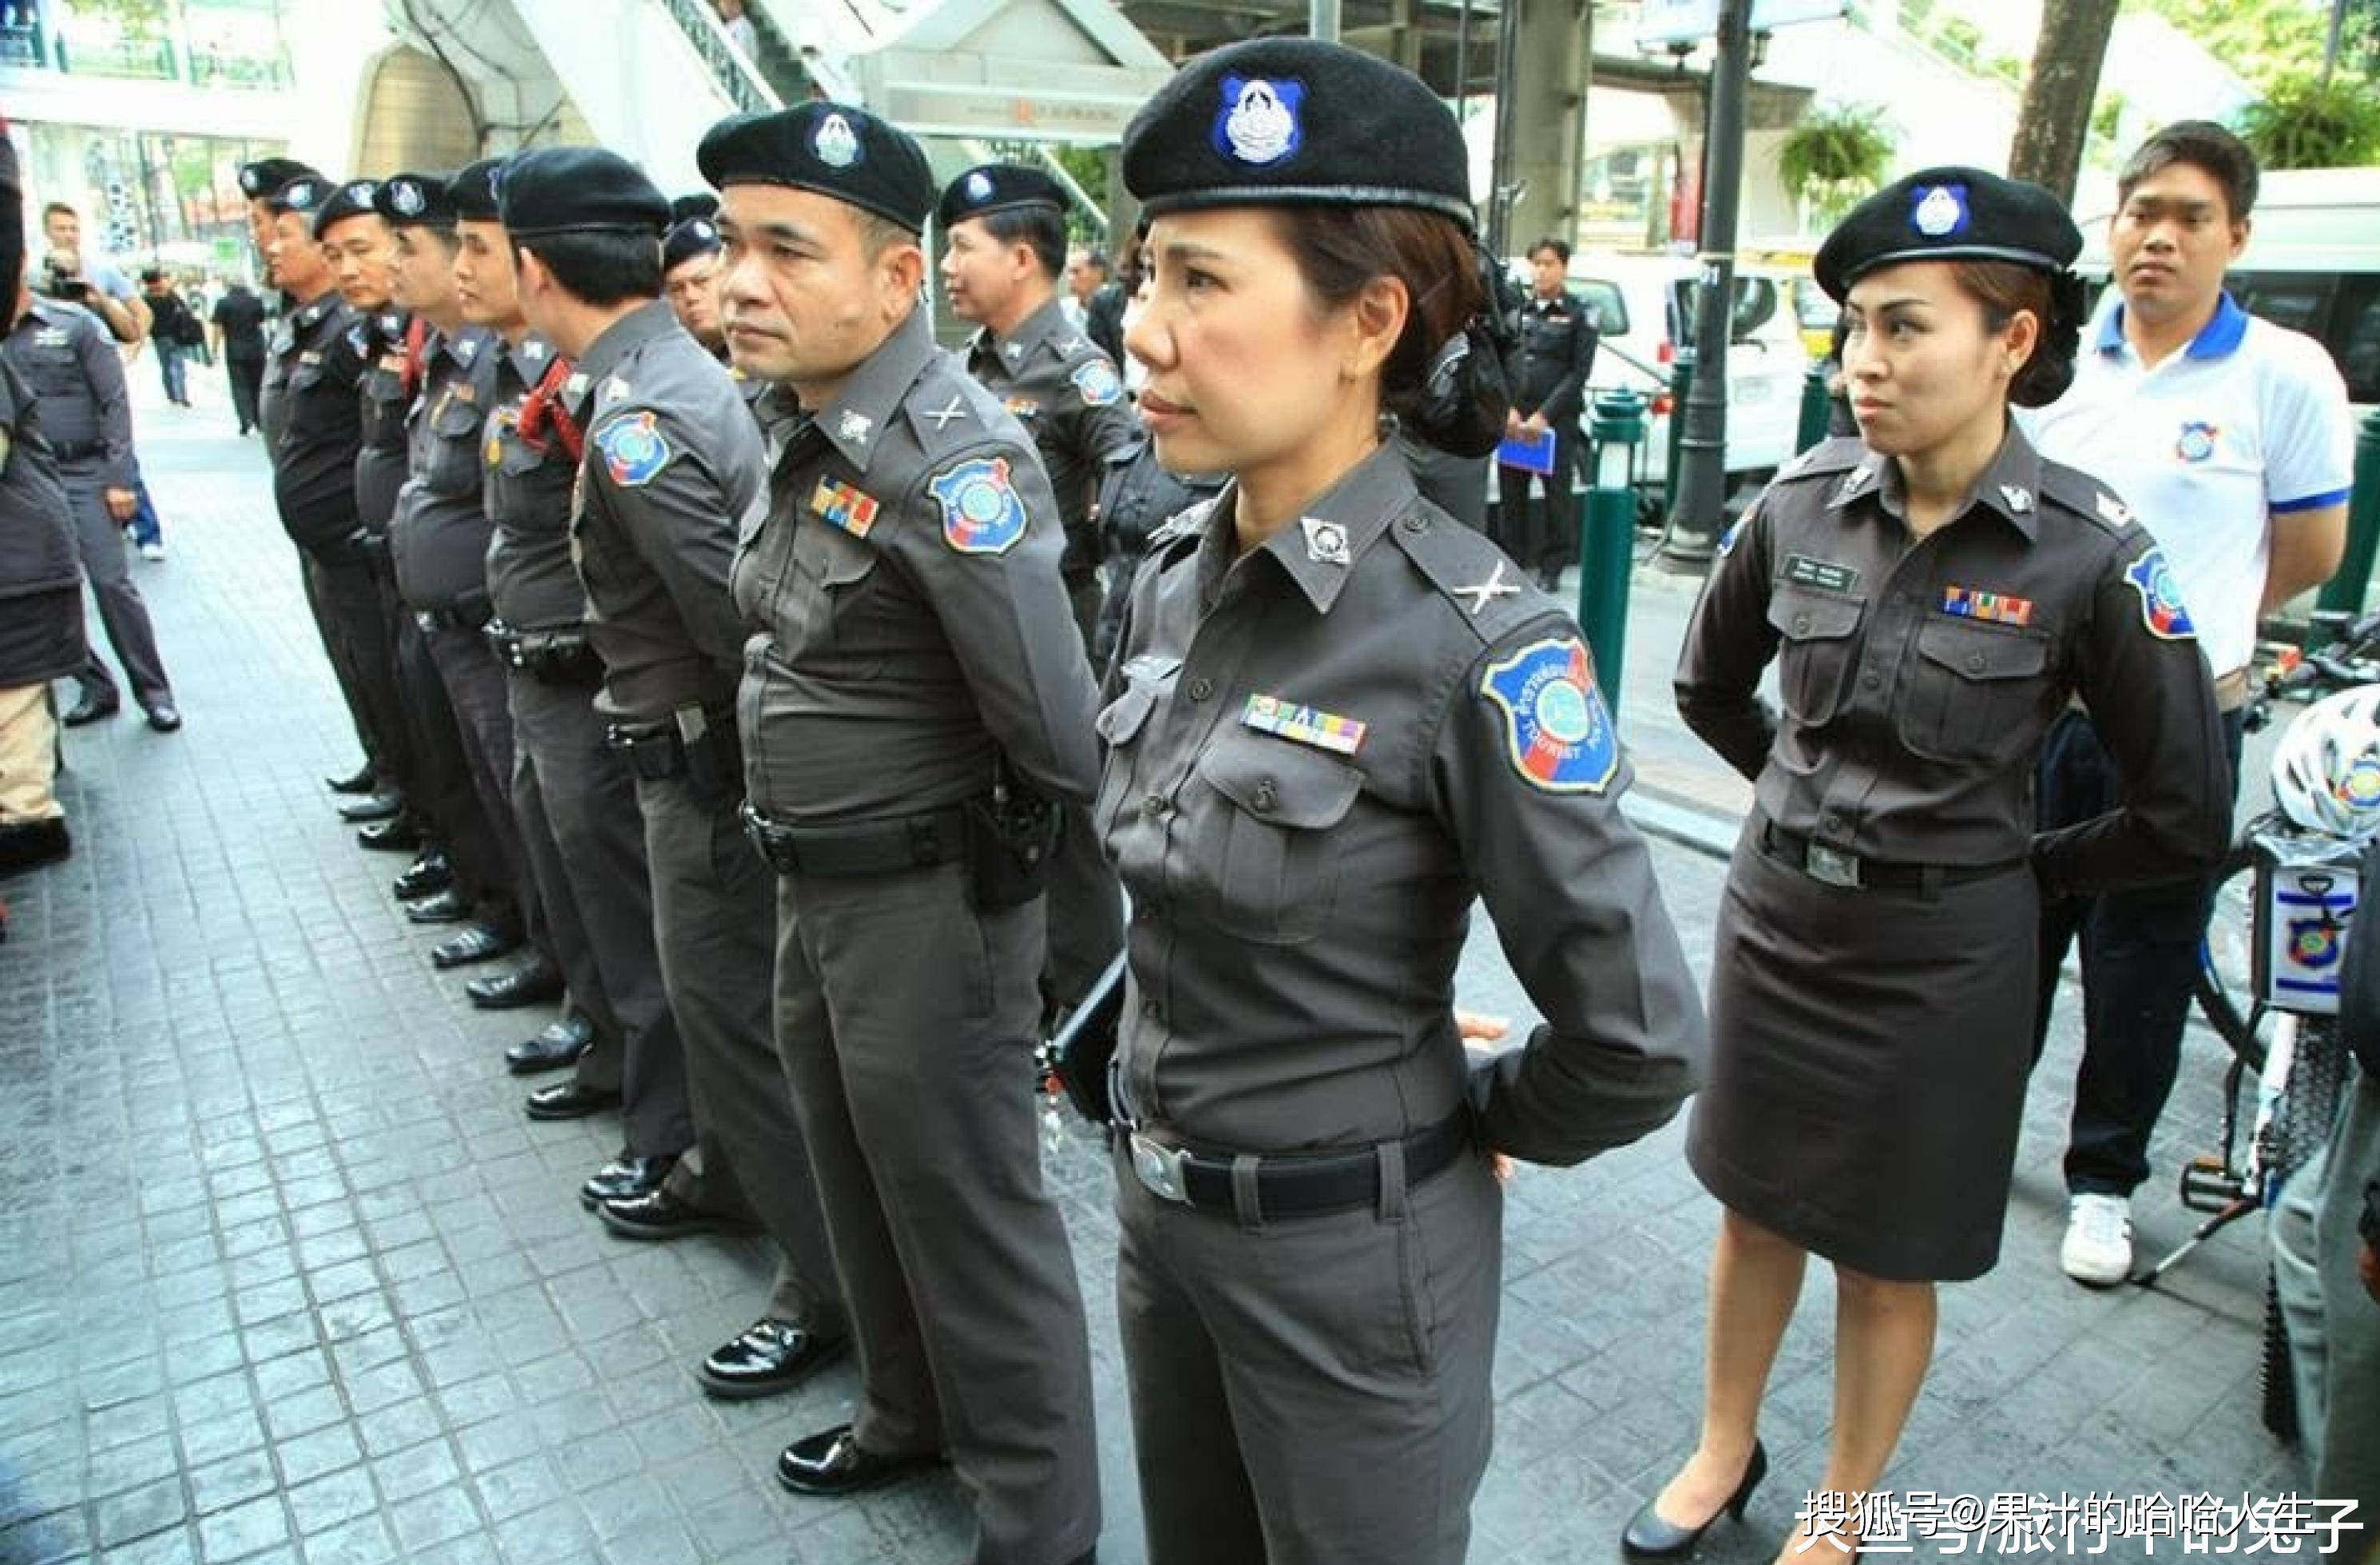 原创紧身衣,大檐帽外加超酷墨镜,泰国警察的"时尚秀"